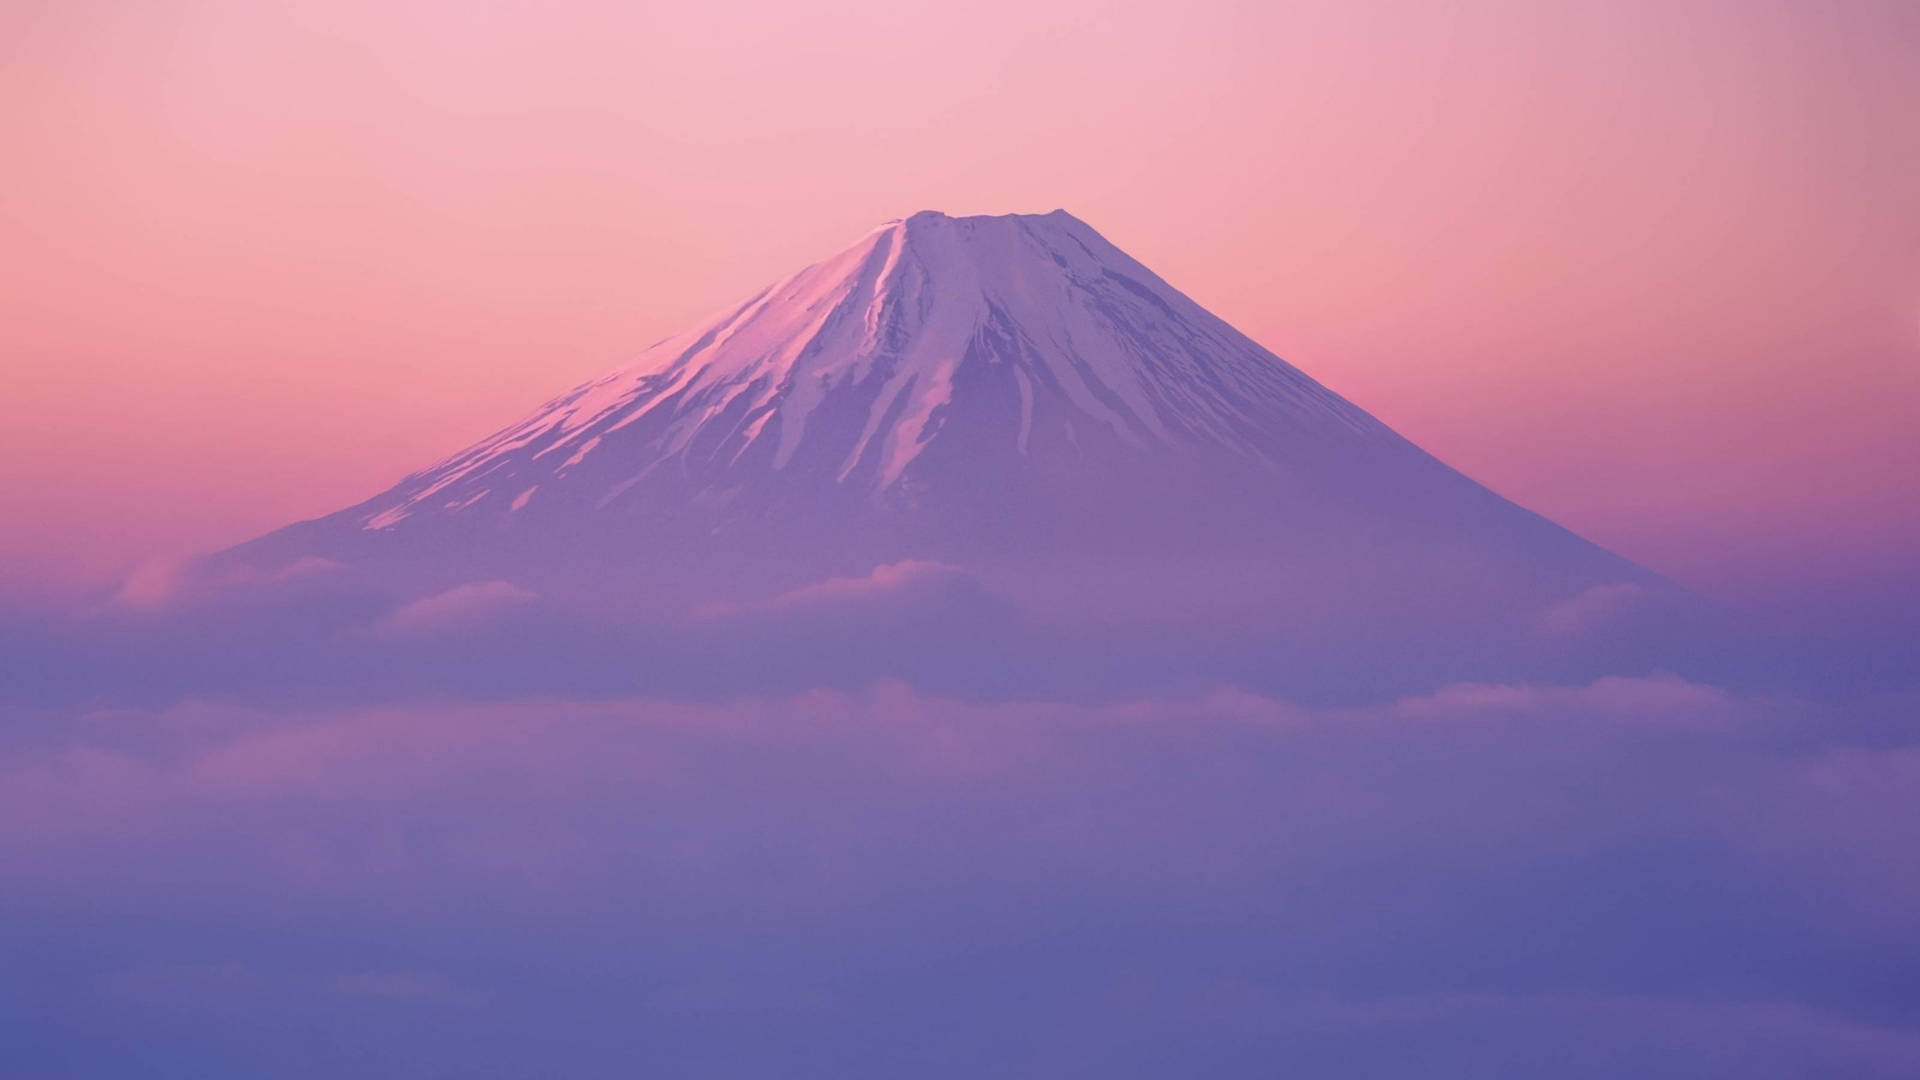 Aesthetic Japan Mt. Fuji Picture